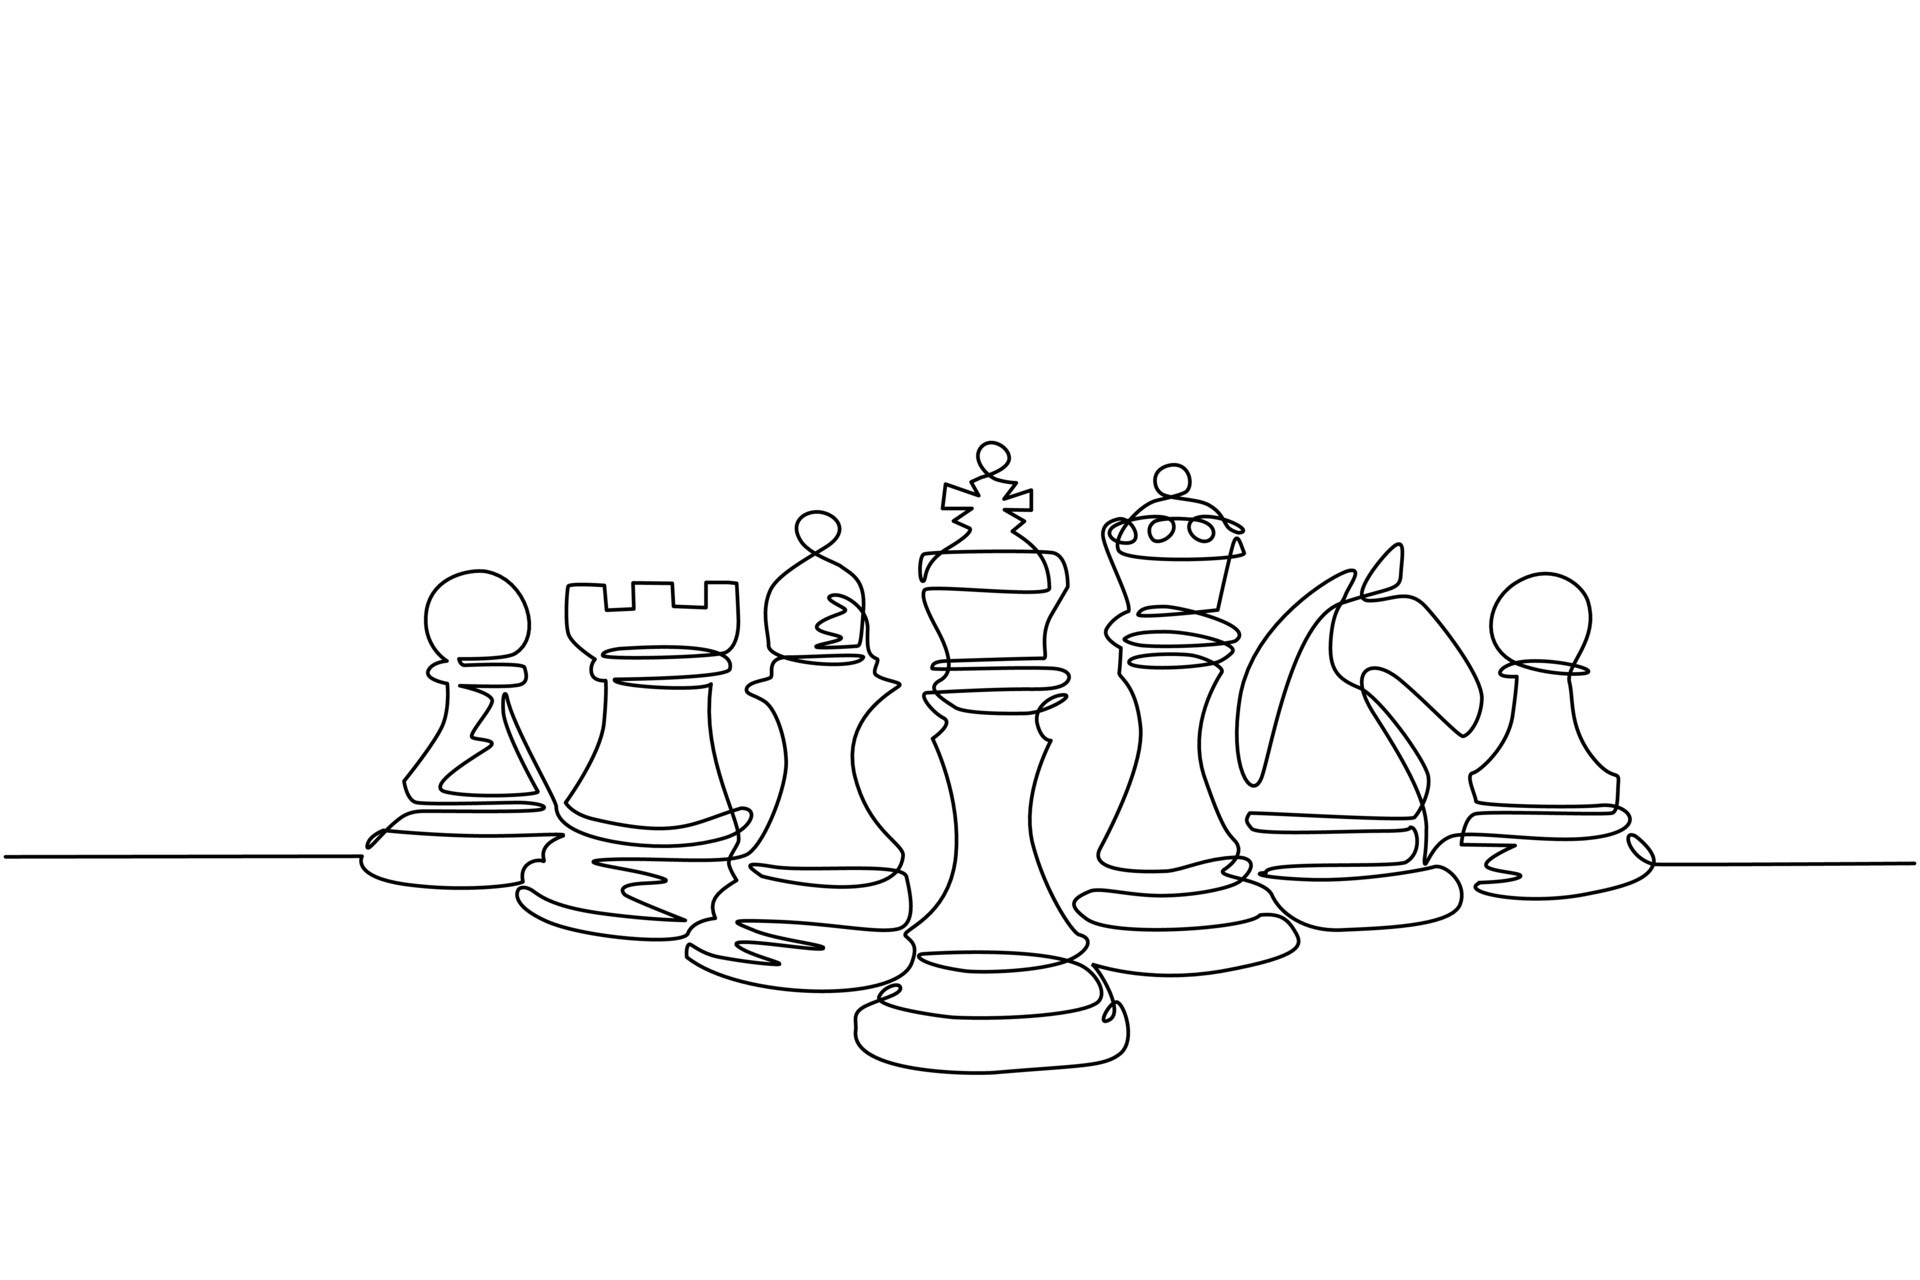 Desenho de arte de linha única de peão de xadrez, ilustração vetorial